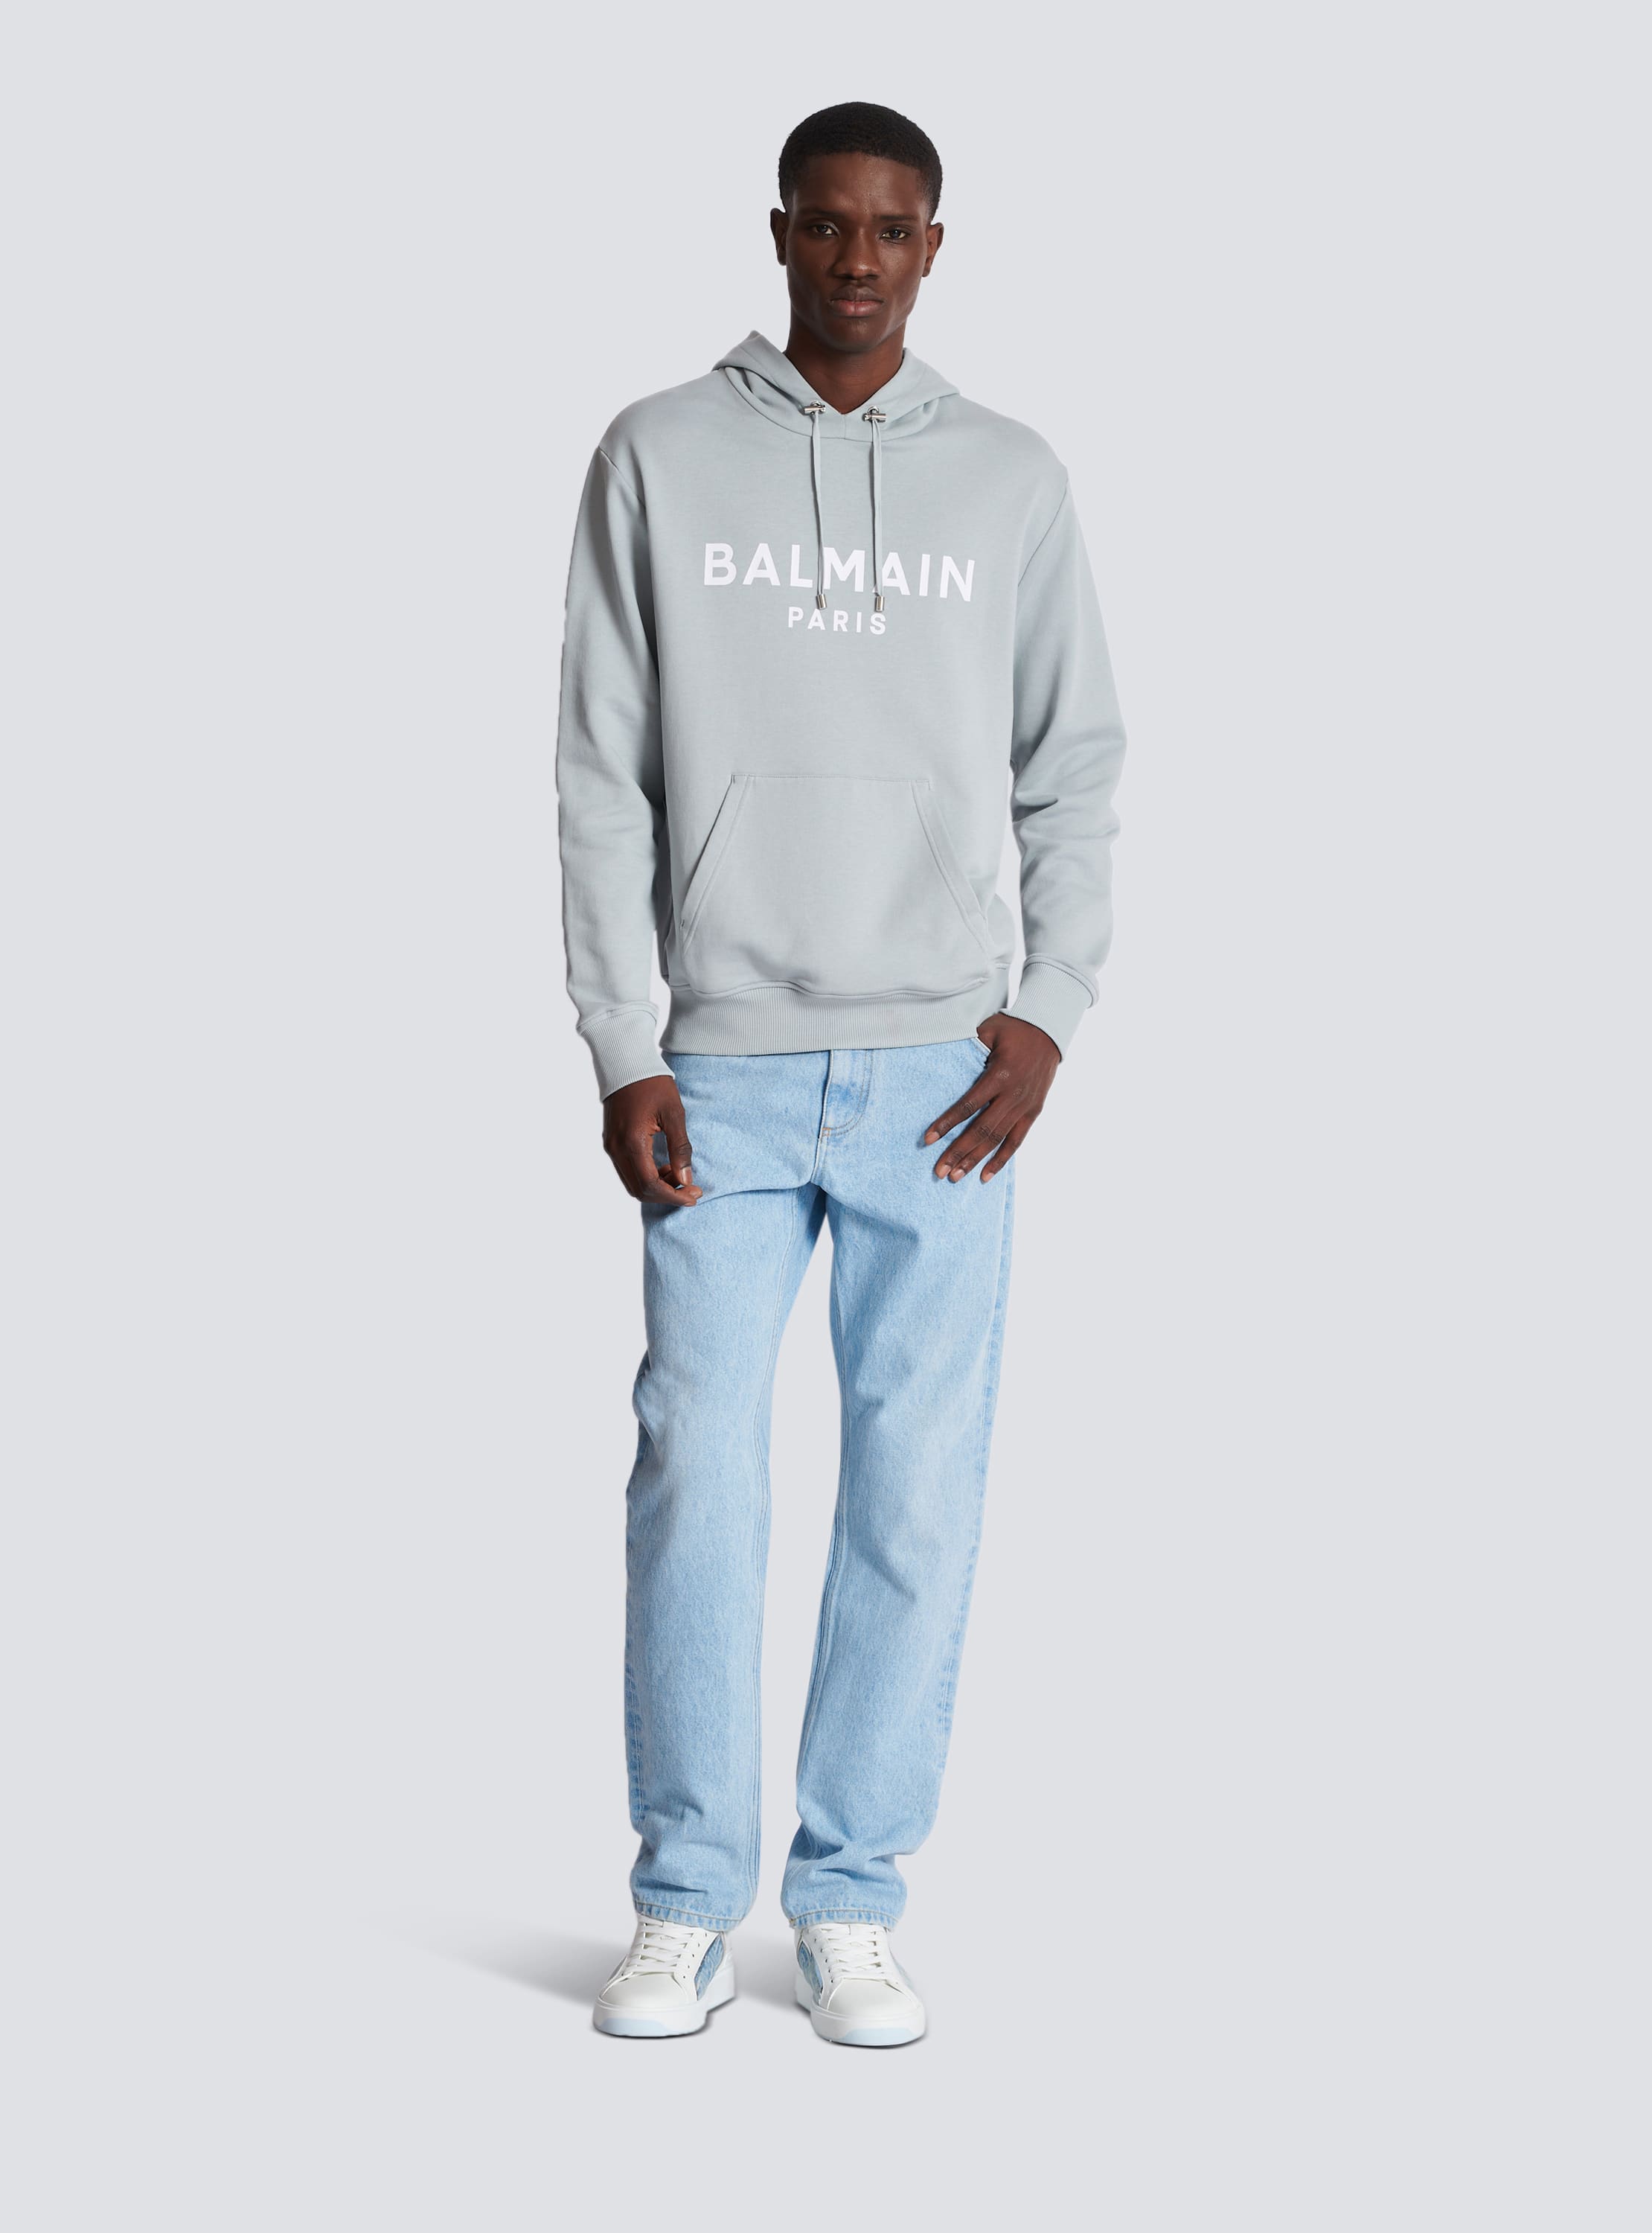 Printed Balmain Paris hoodie